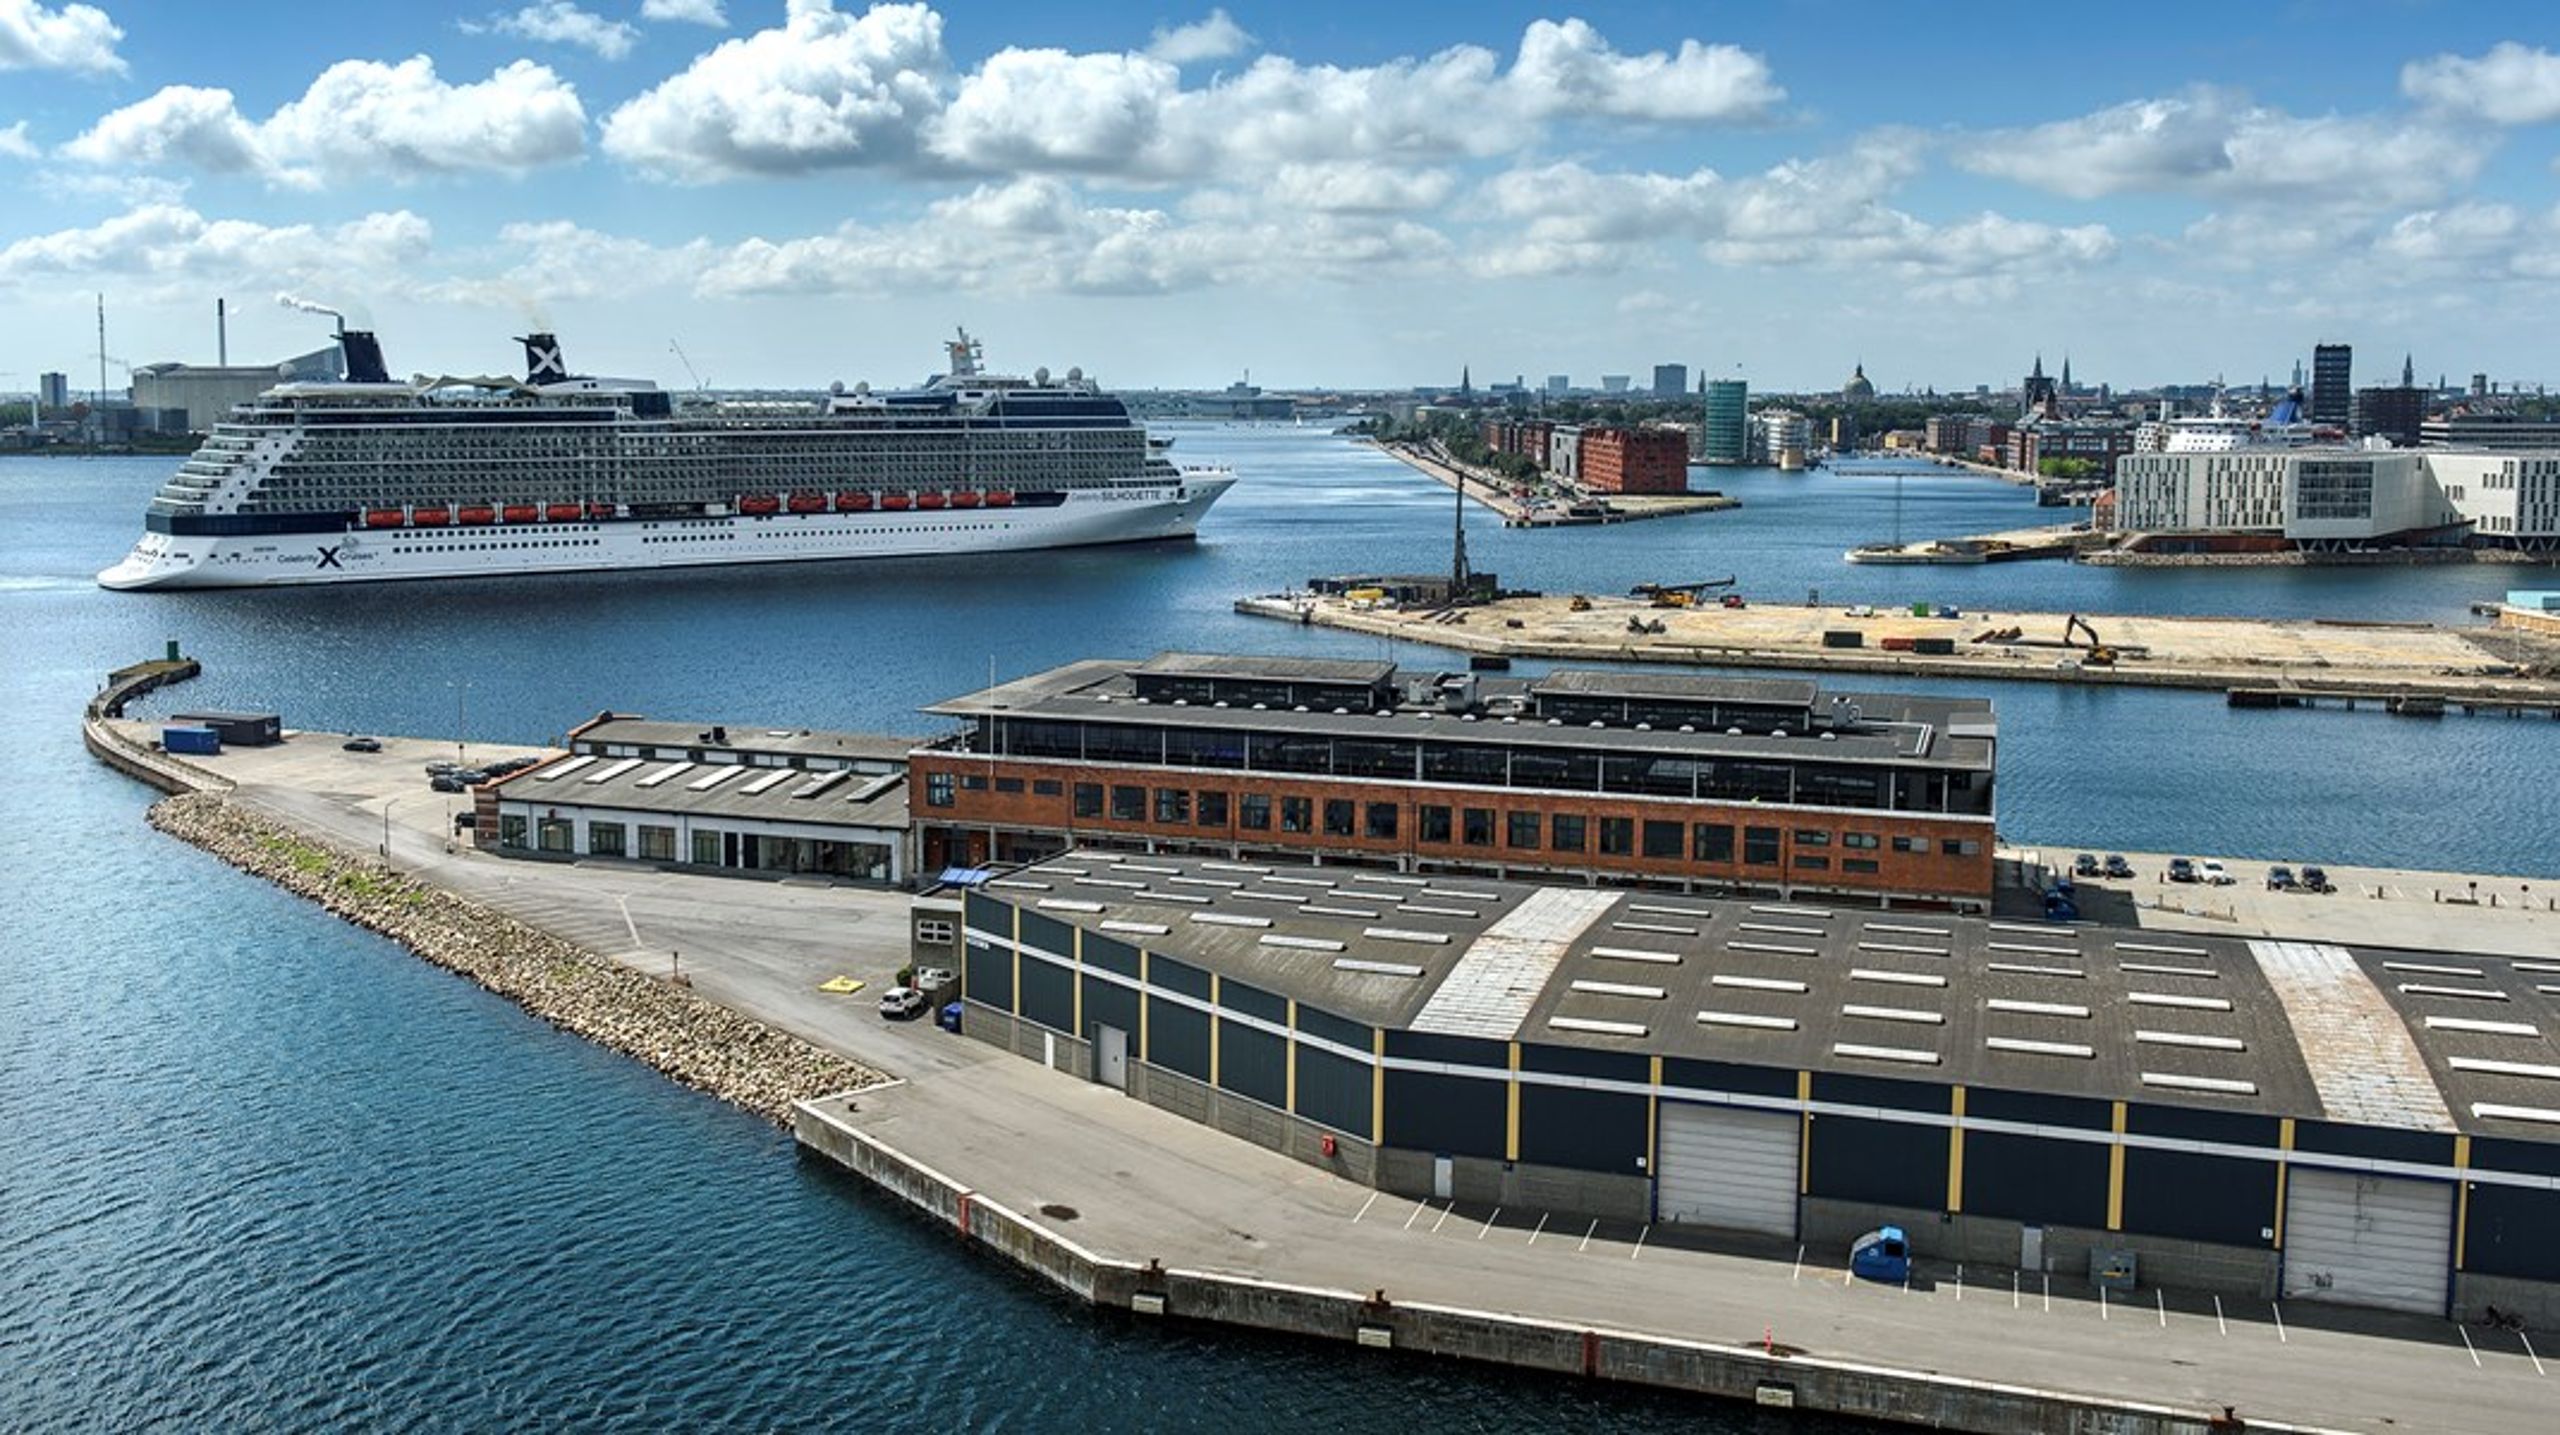 Der skal ske et temposkifte i investeringer i&nbsp; danske havne, hvis vi skal i mål med den grønne omstilling, skriver Carsten Aa og Tine Kirk Pedersen.